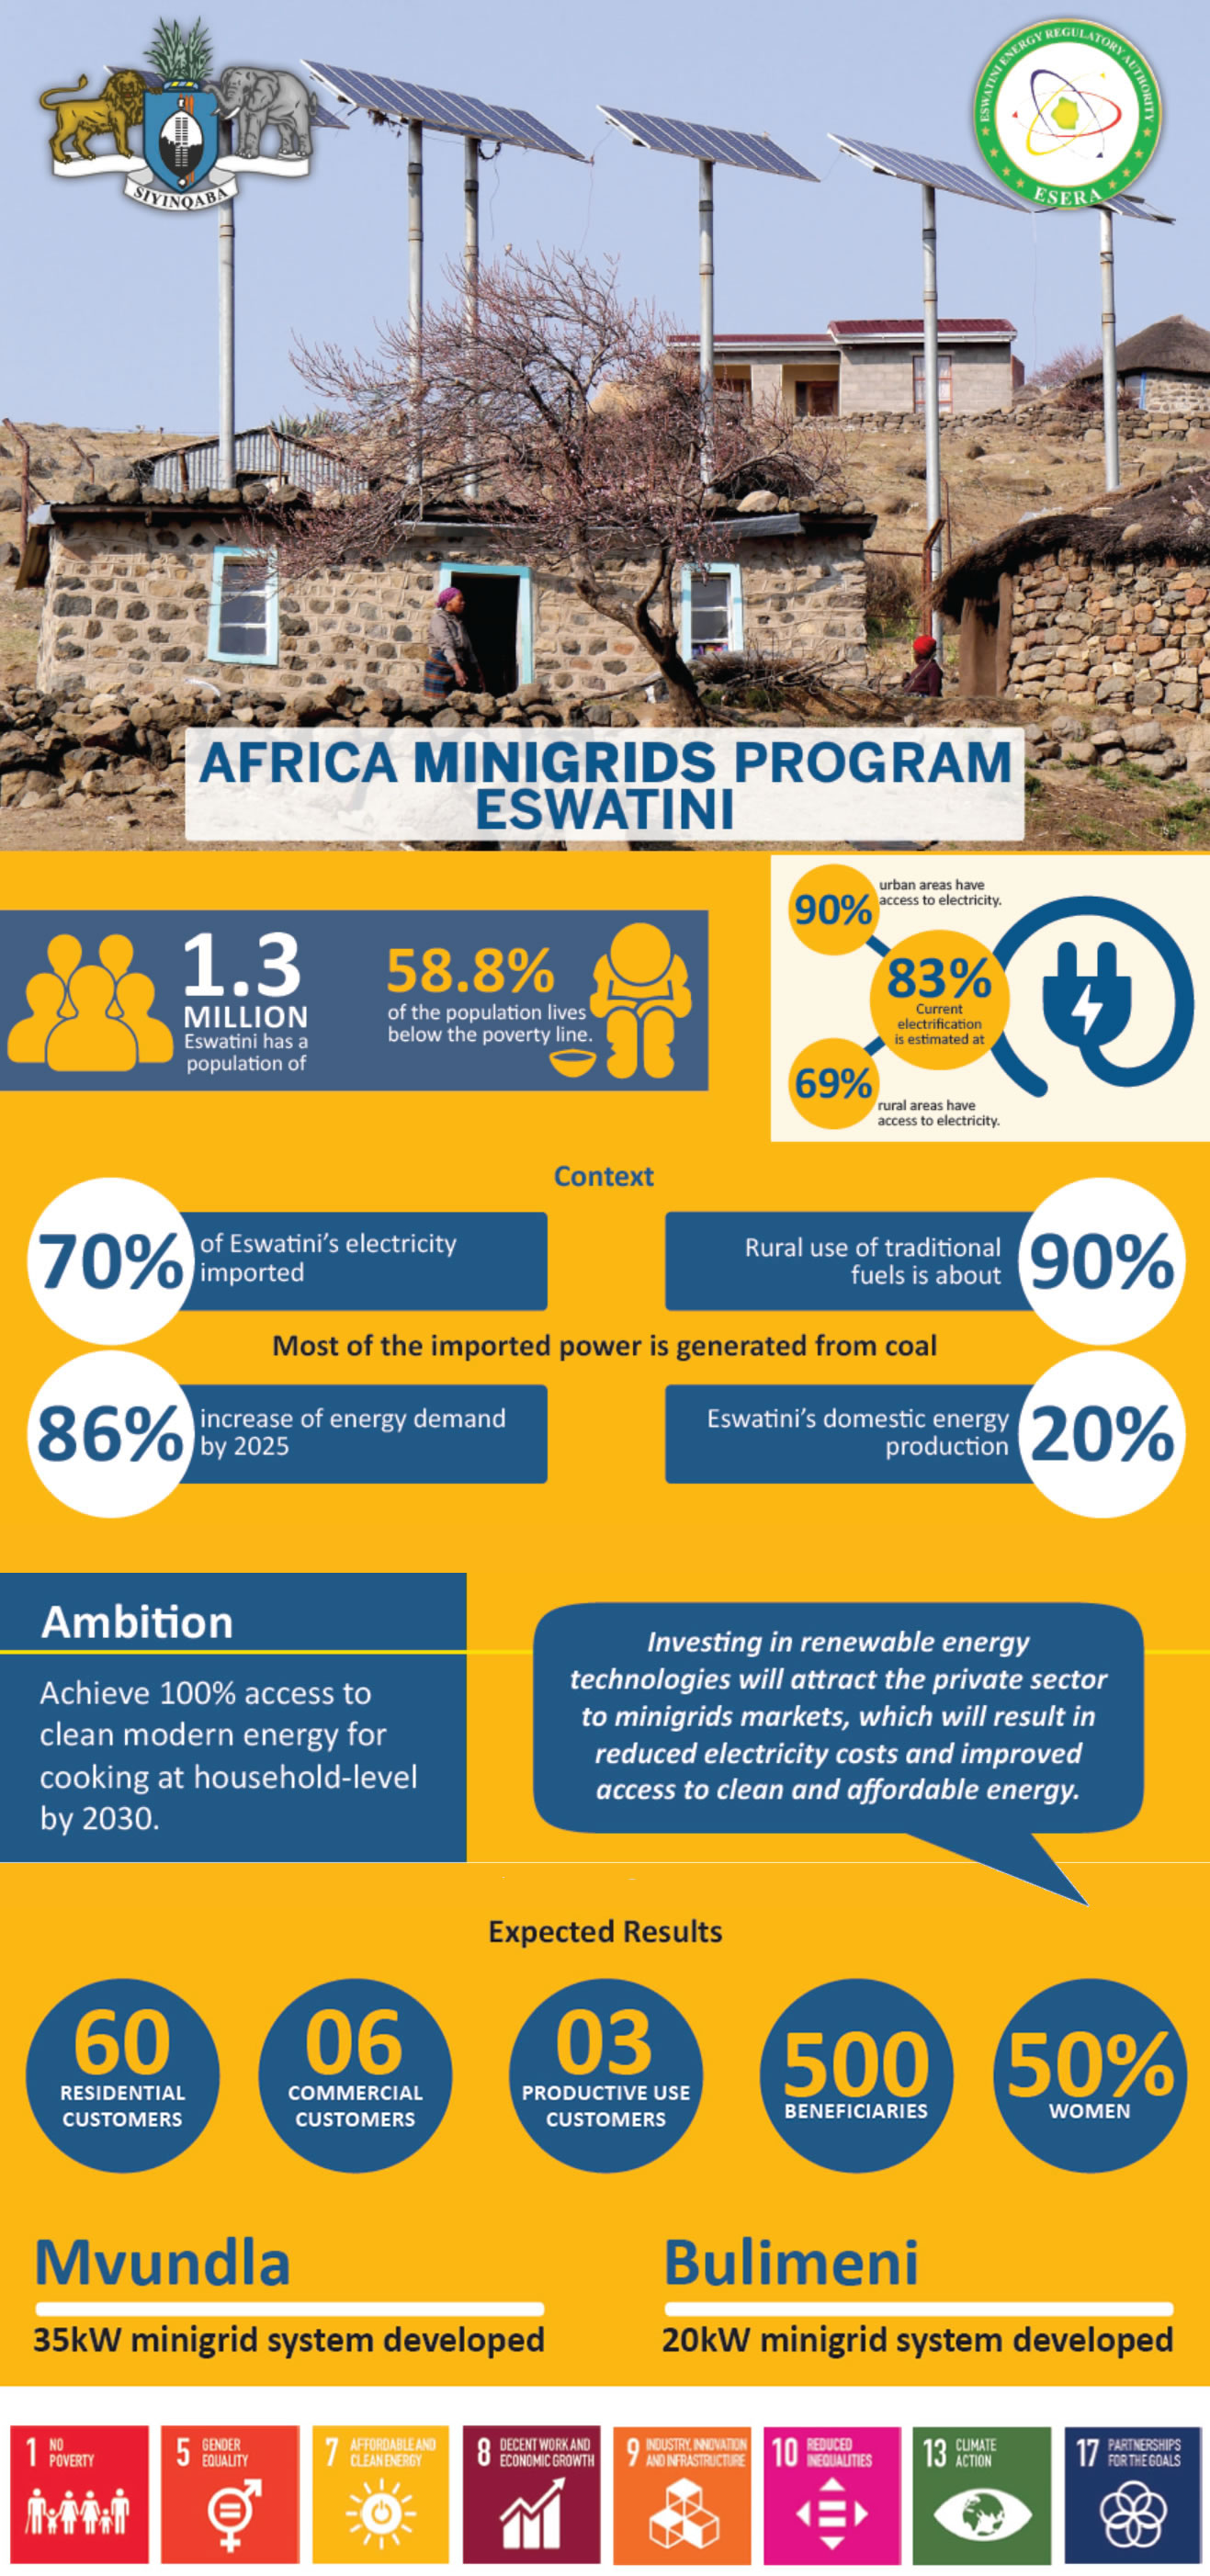 Africa Minigrids Program (AMP) Eswatini